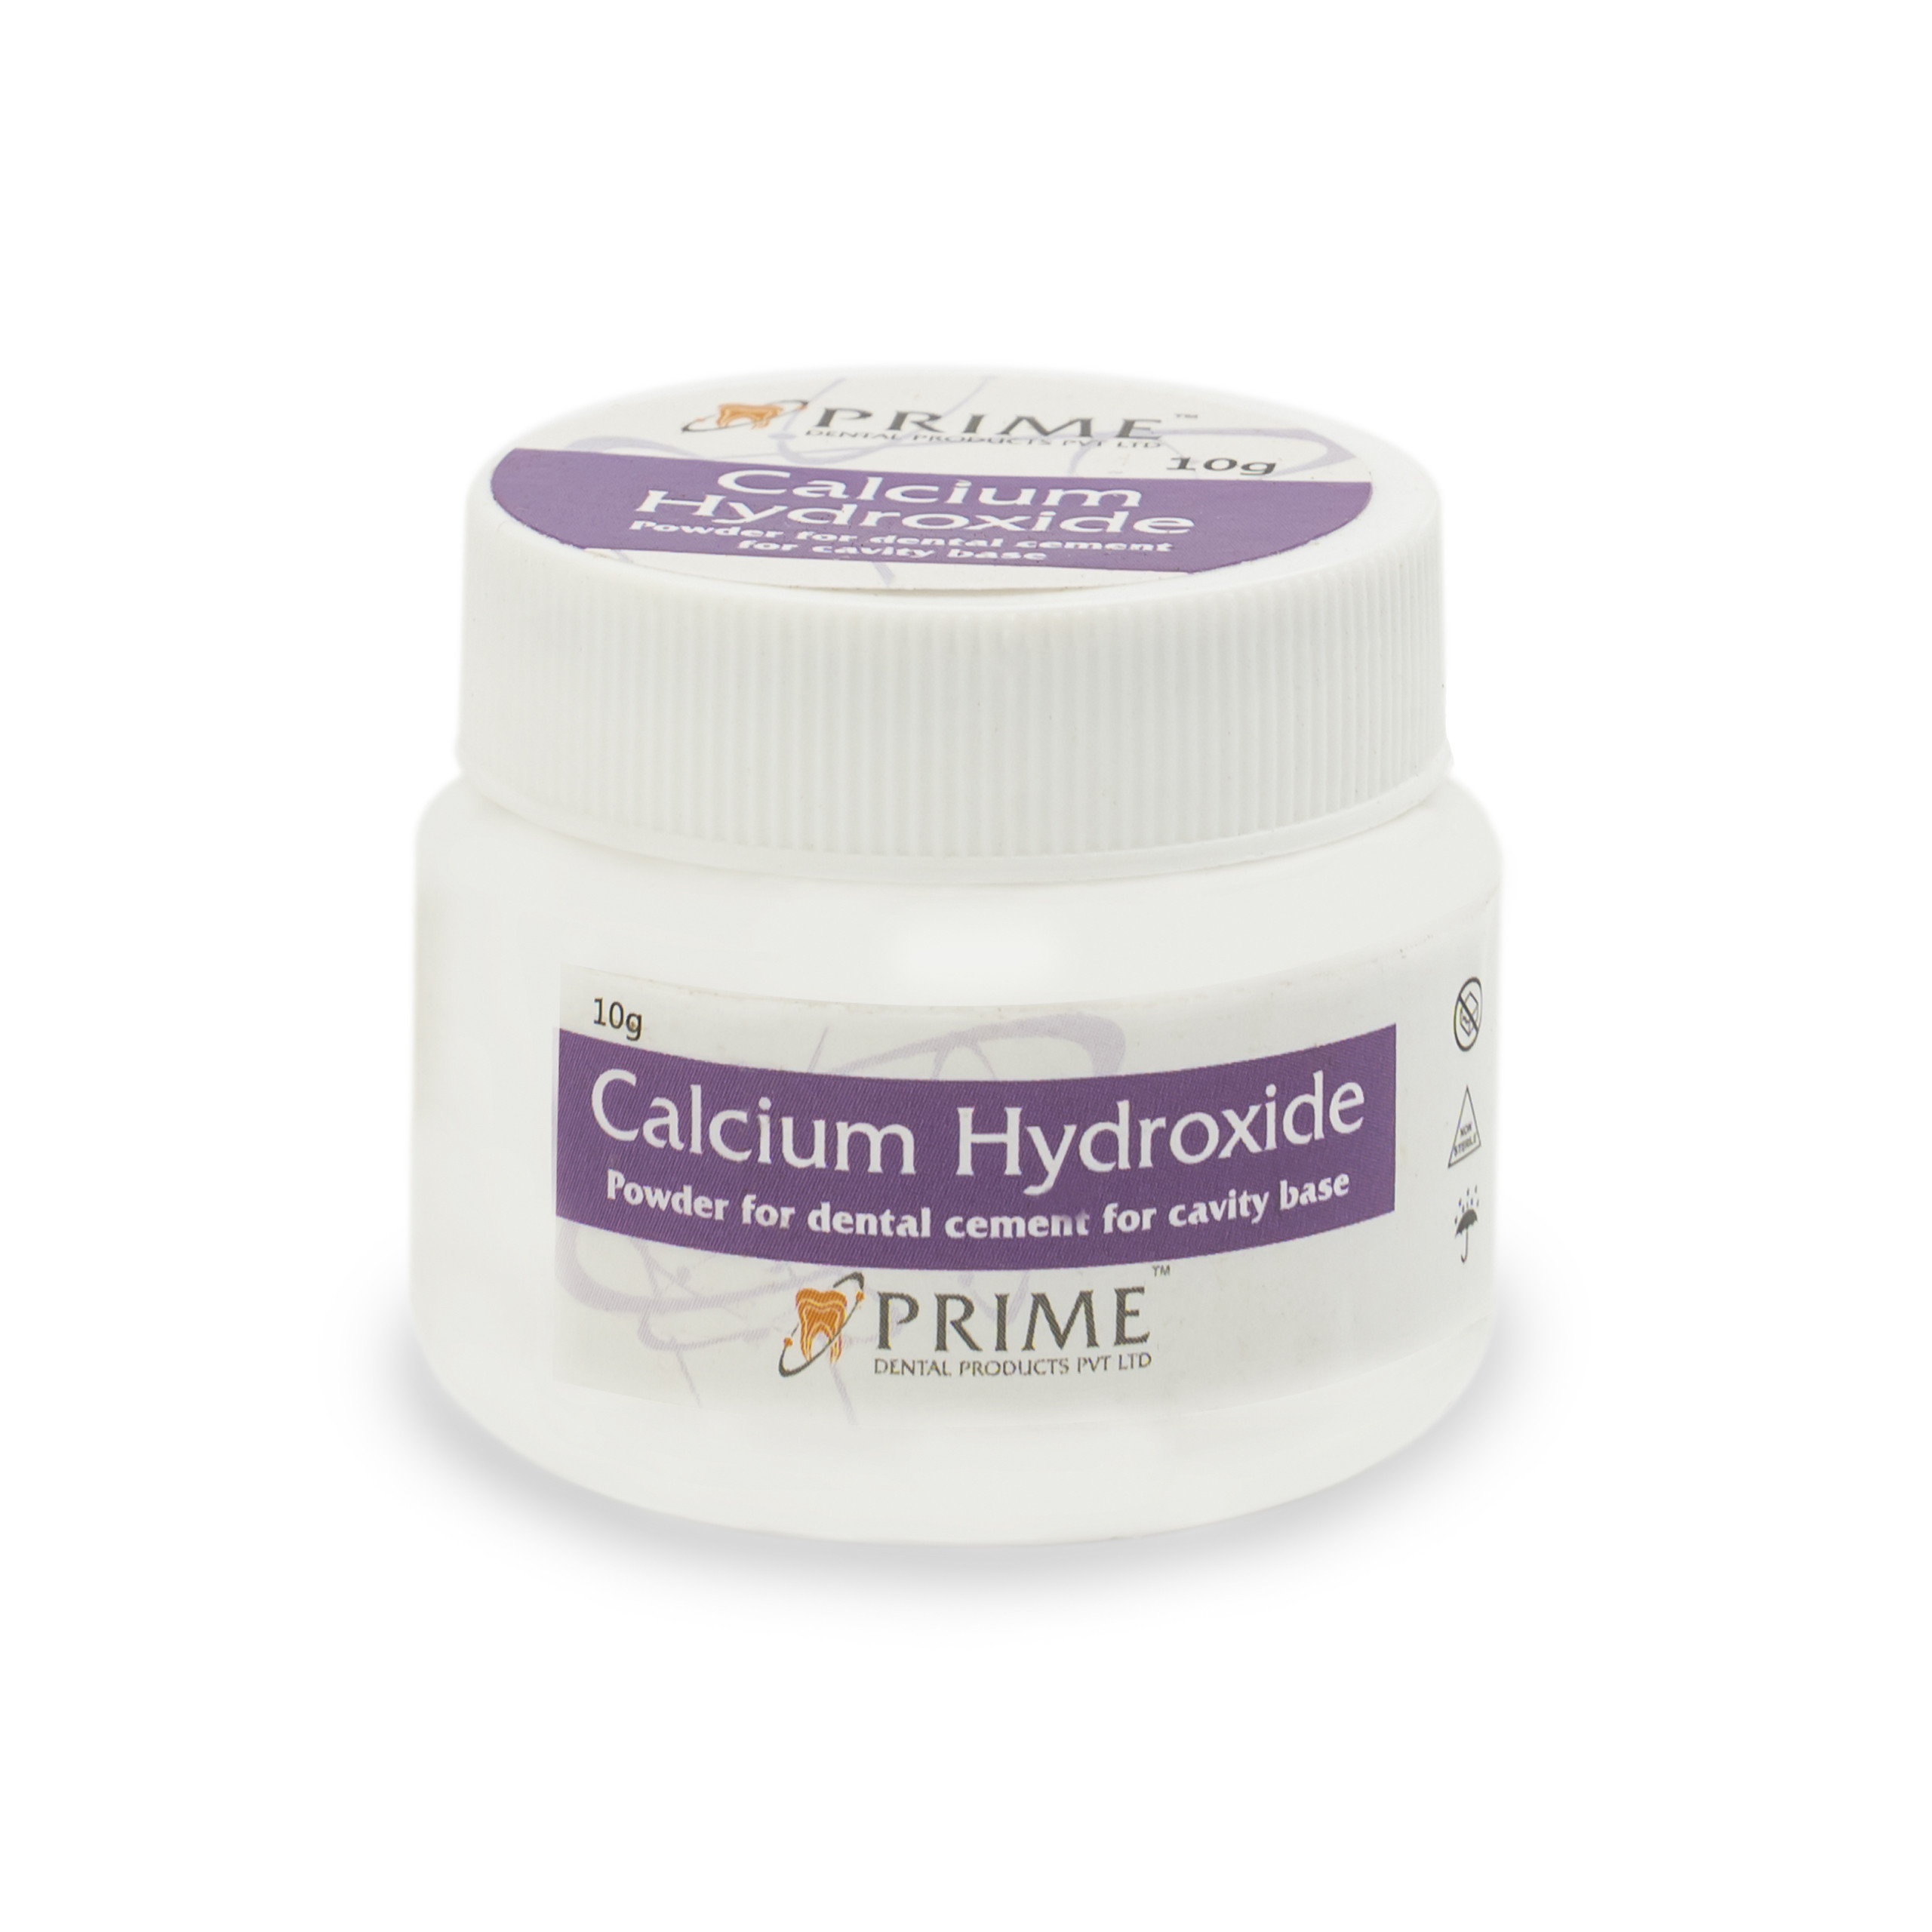 Prime Calcium Hydroxide Powder